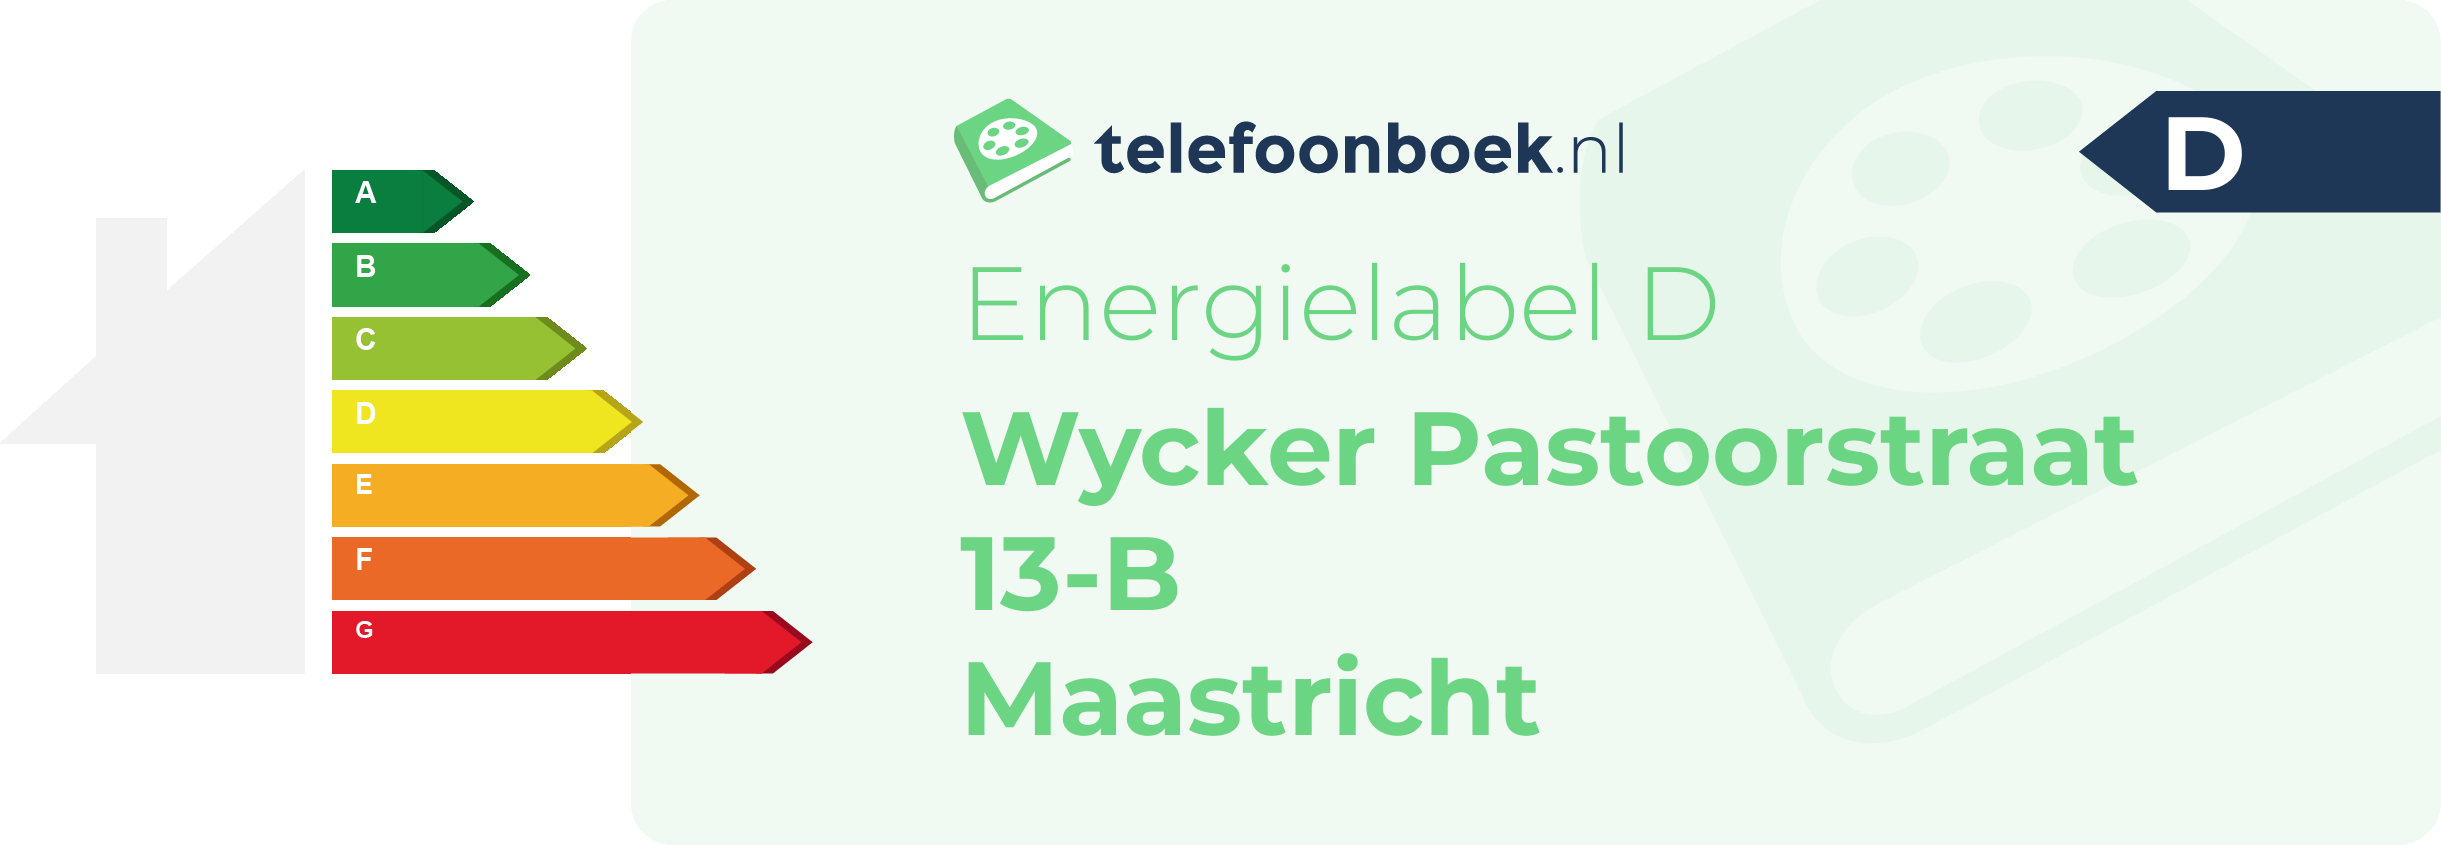 Energielabel Wycker Pastoorstraat 13-B Maastricht